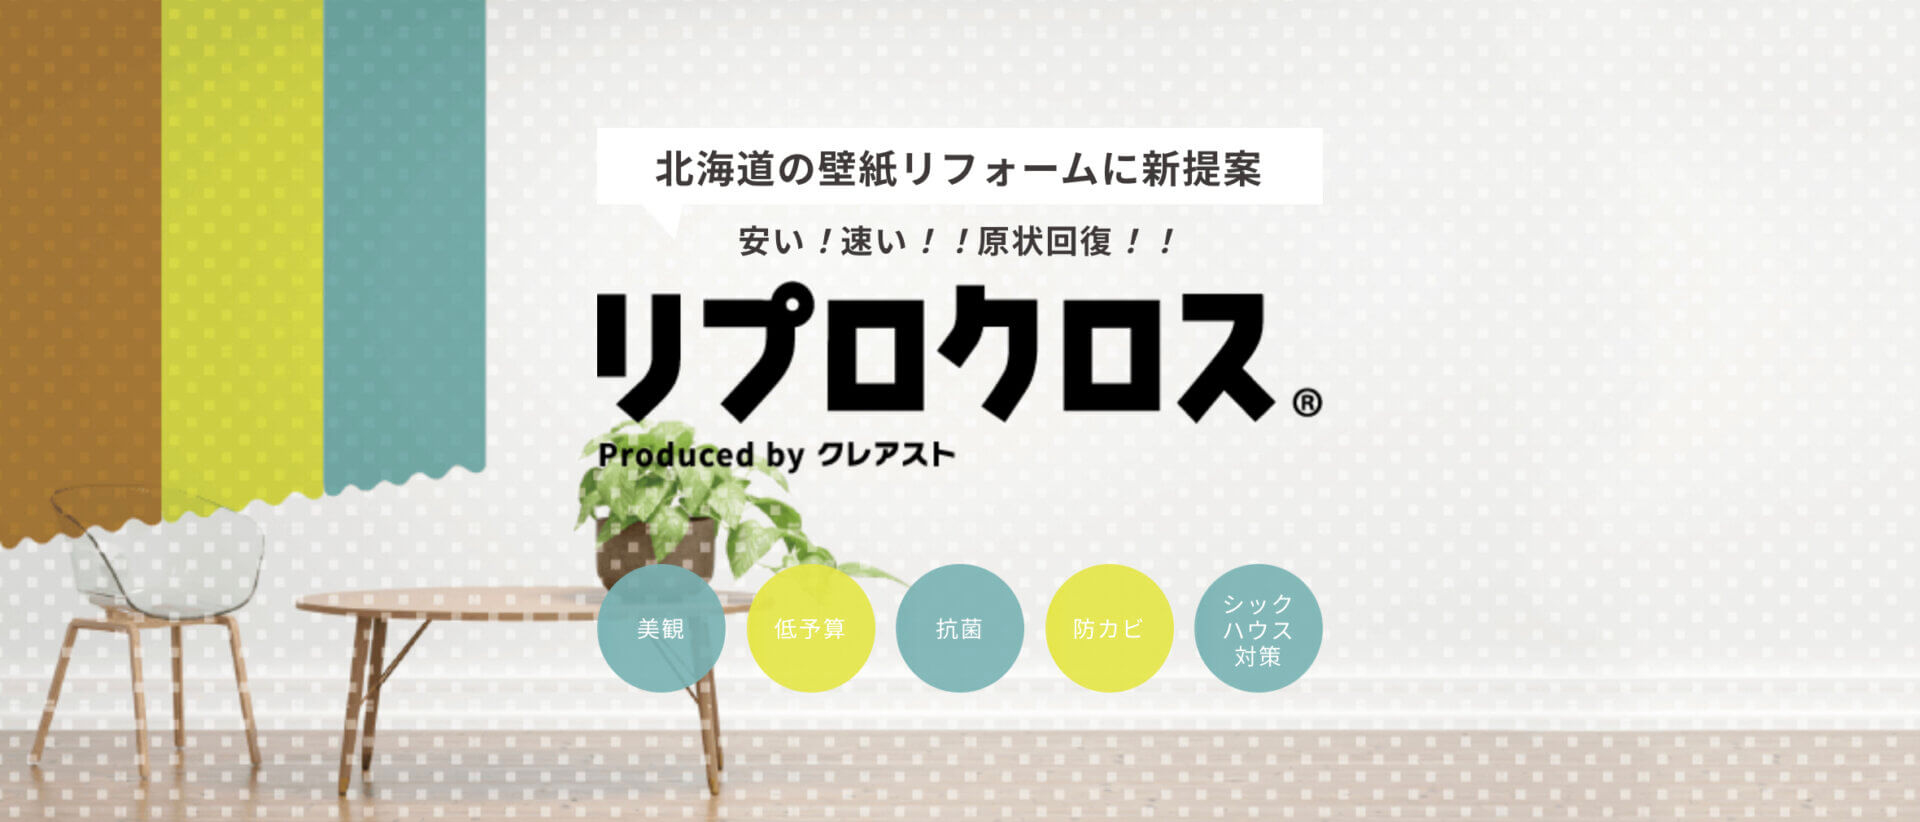 クレアストの新商品「リプロクロス」専用ページを公開しました | 北海道・札幌のリフォームなら株式会社クレアスト